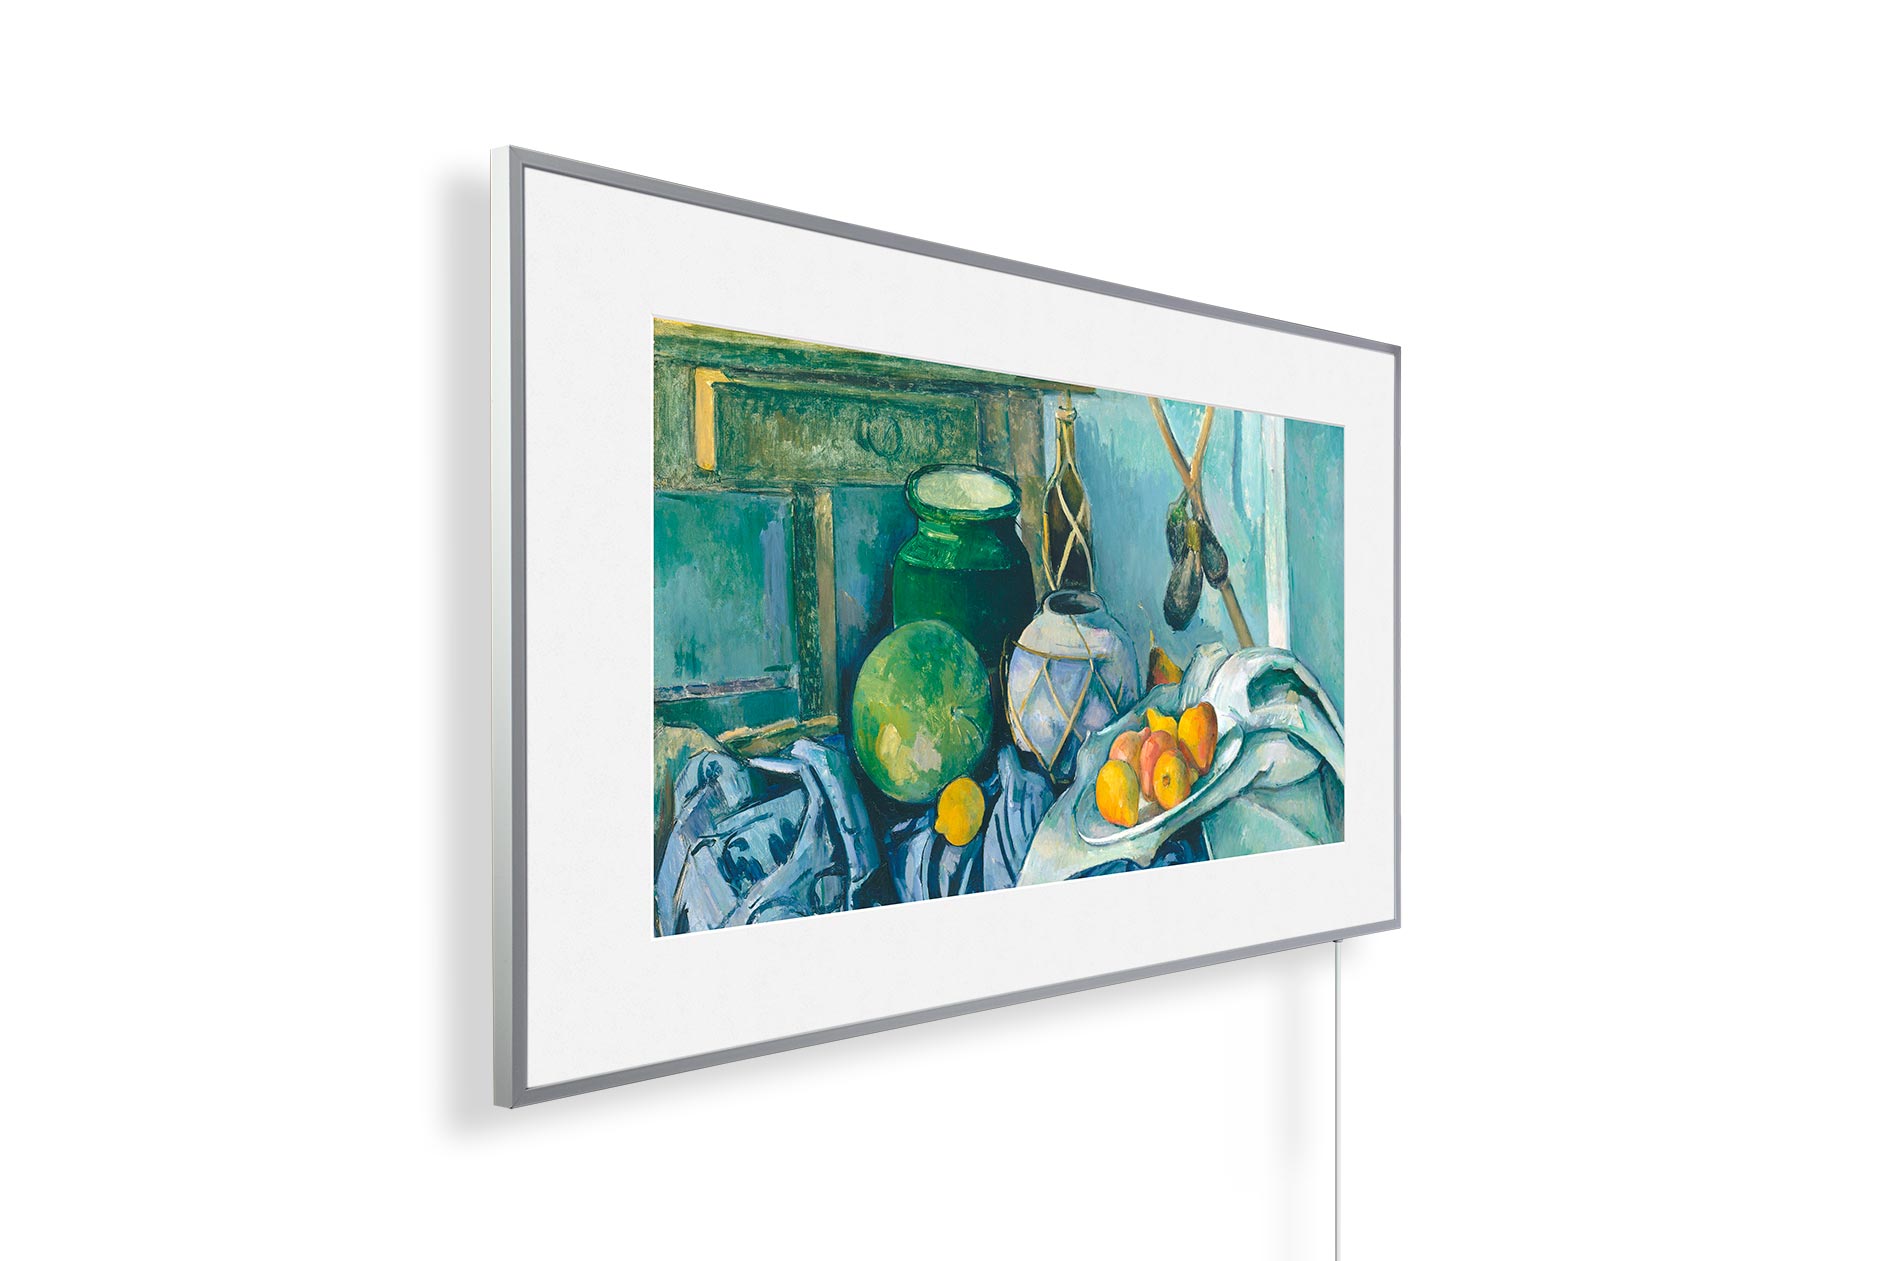 Immer noch am Leben mit einem Ingwerglas und Auberginen, gemalt von Paul Cezanne, Infrarotheizung wie im Museum